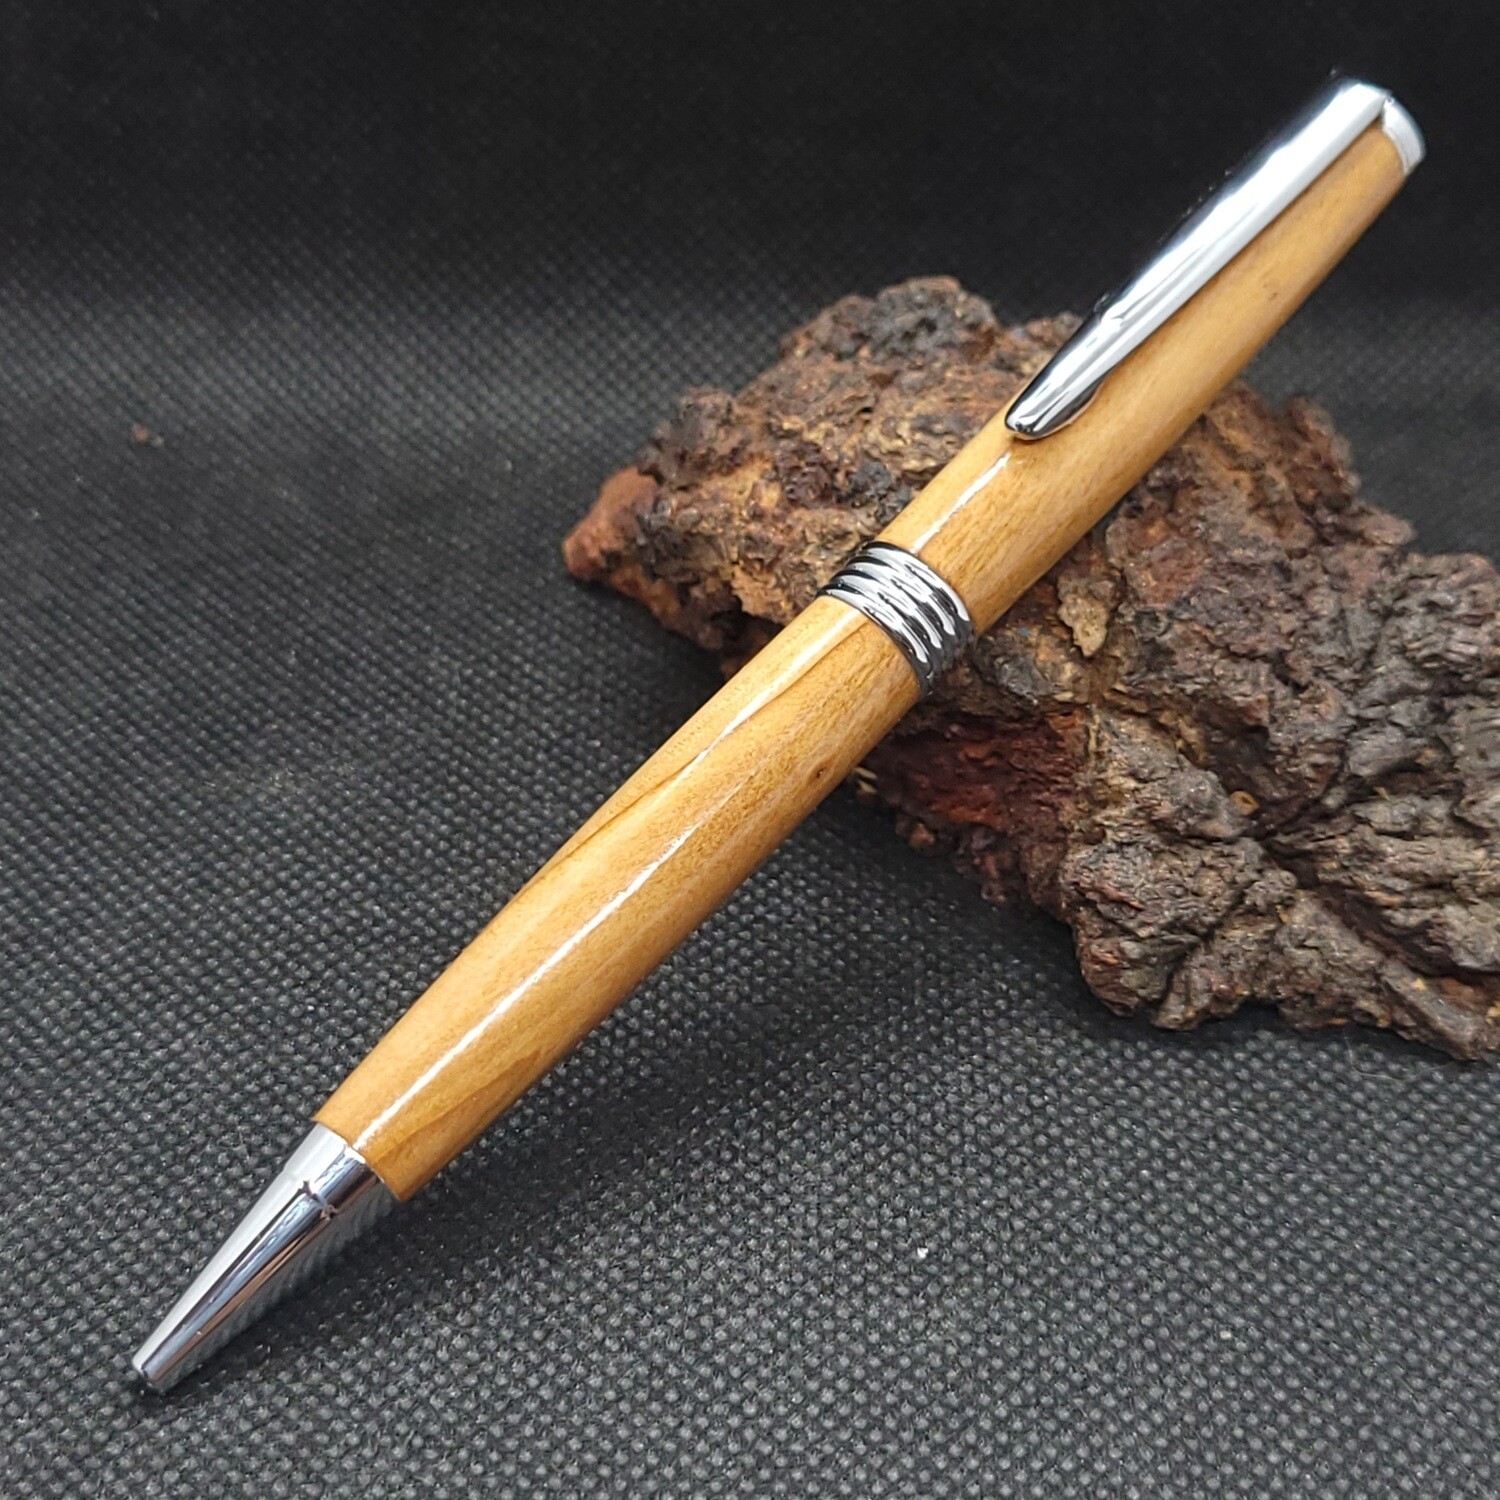 Streamline ballpoint pen